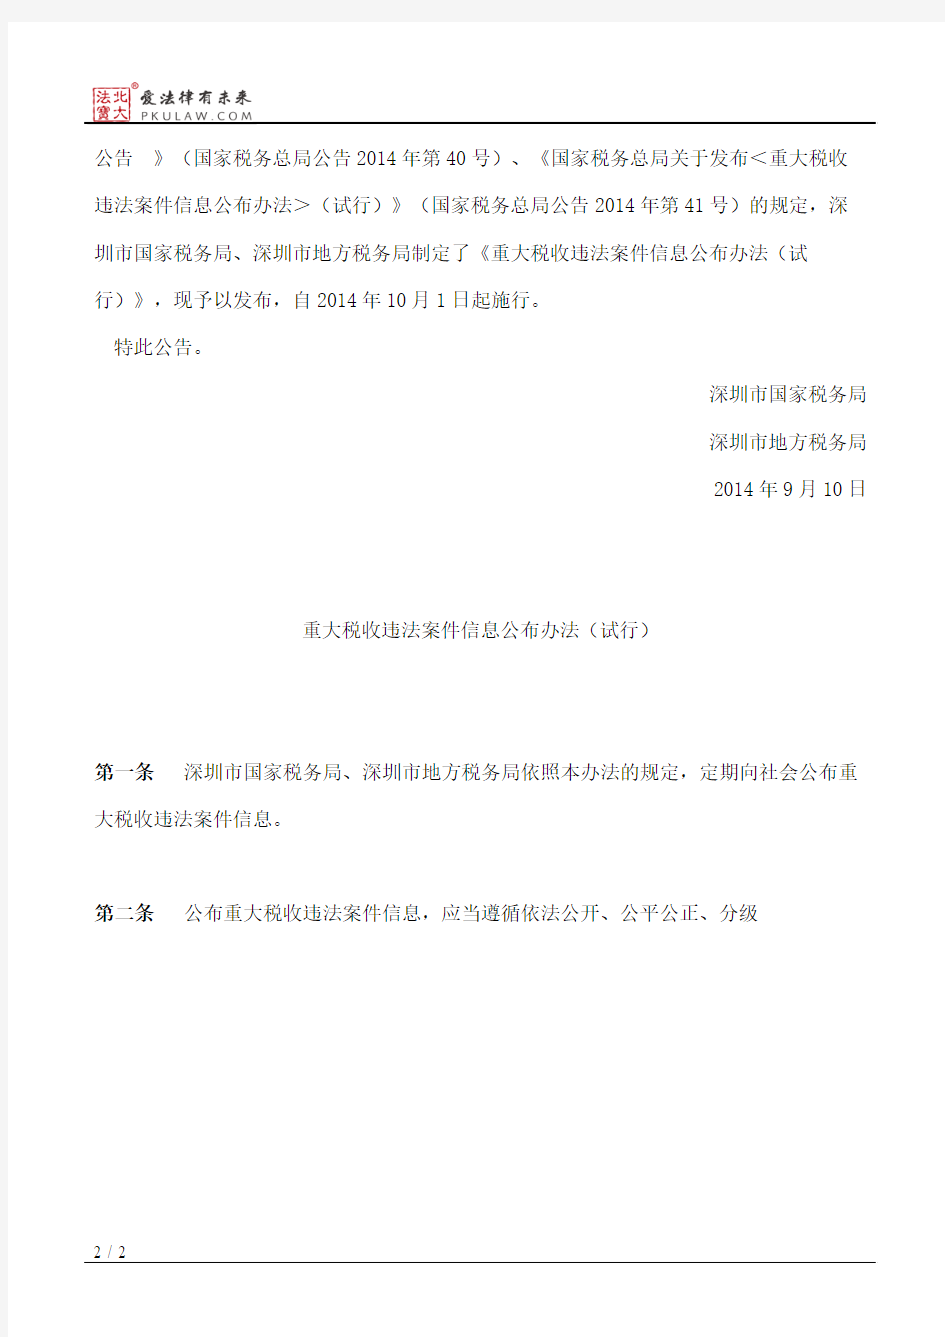 深圳市国家税务局、深圳市地方税务局关于发布《重大税收违法案件